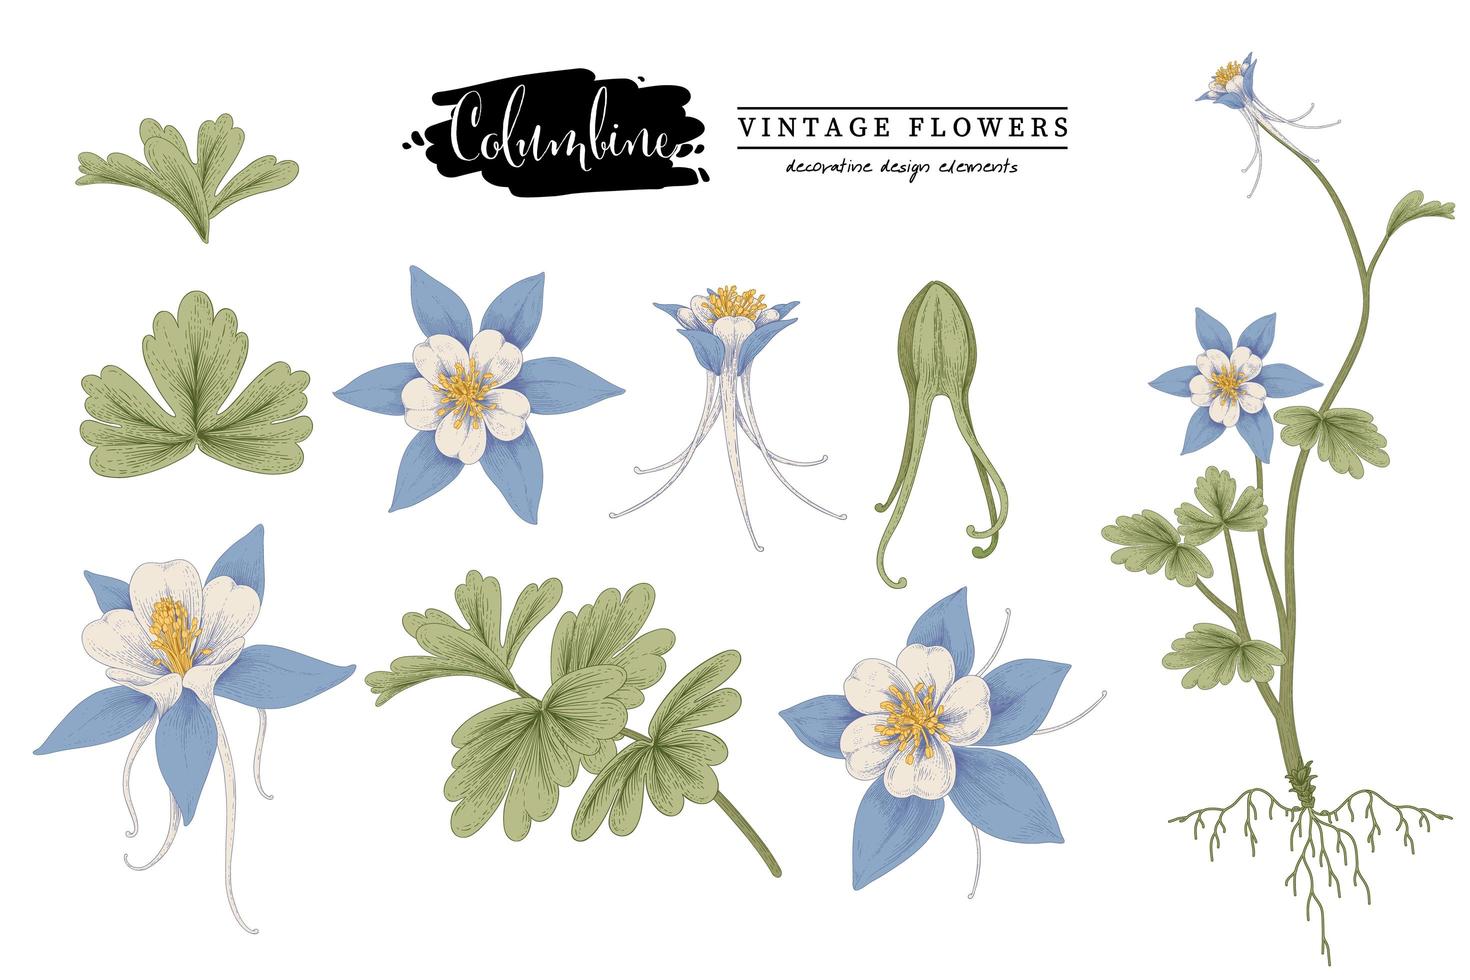 insieme decorativo delle illustrazioni botaniche degli elementi disegnati a mano dell'annata del fiore blu della colombina vettore